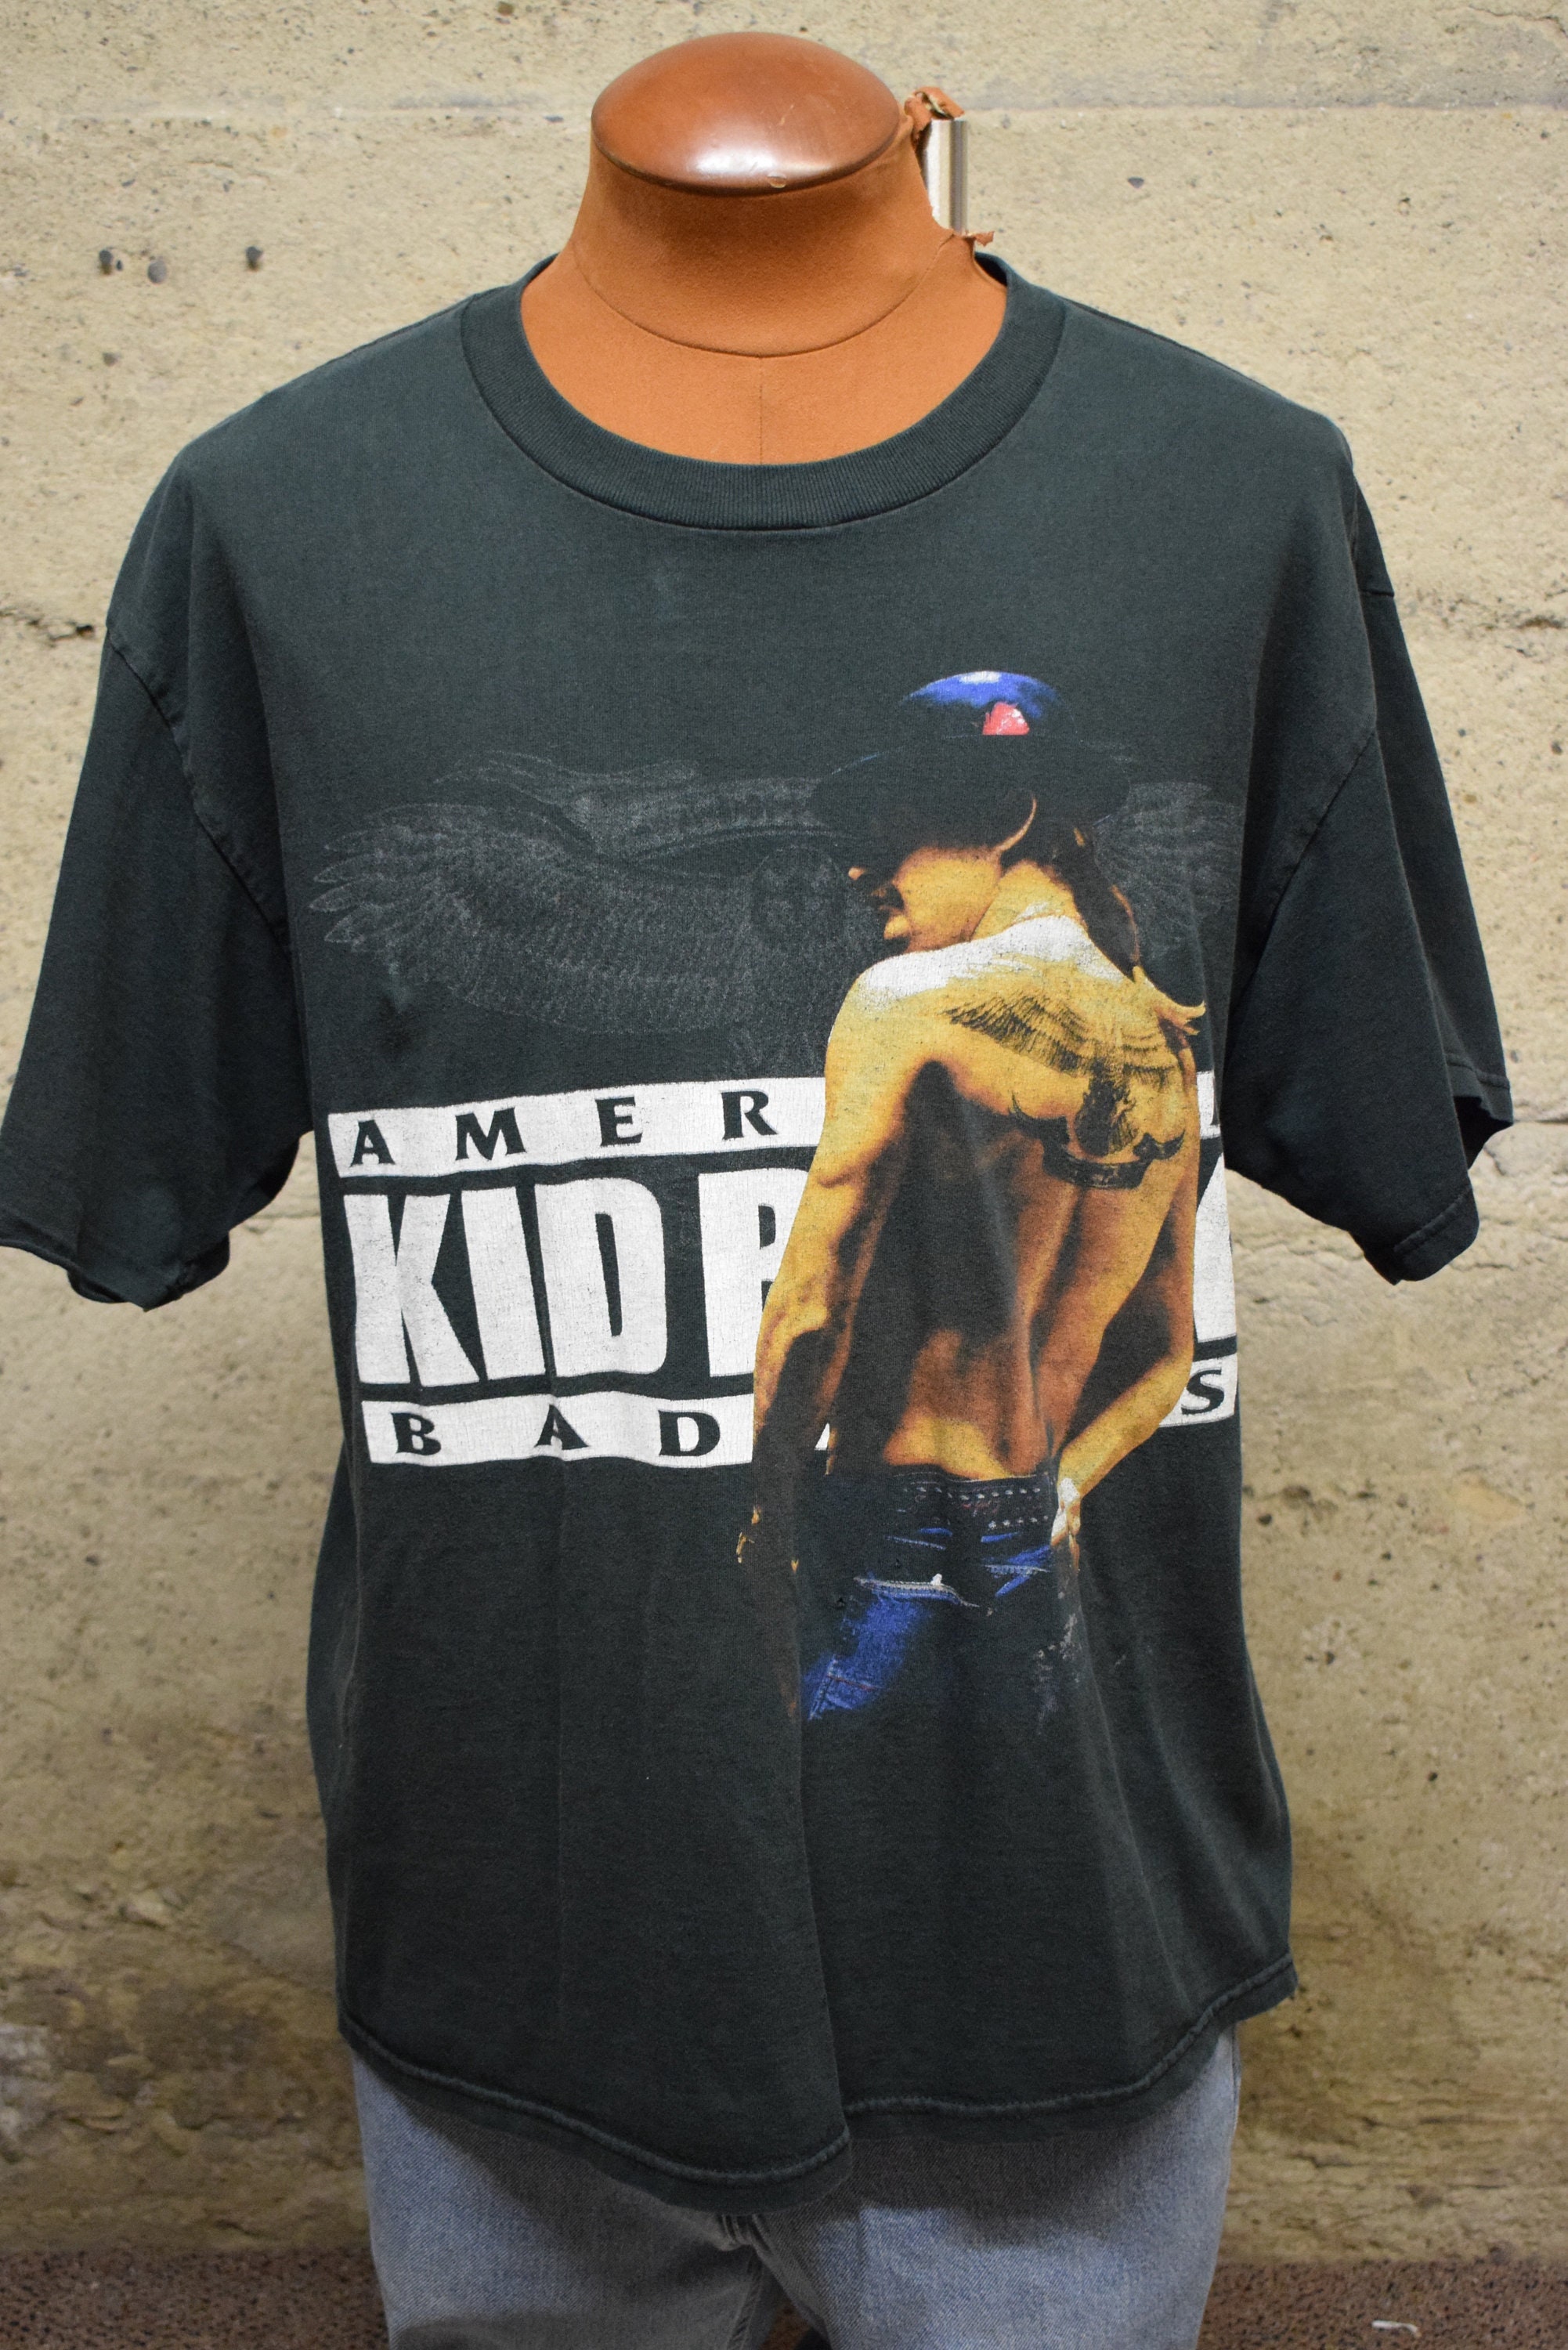 Kleding Jongenskleding Tops & T-shirts T-shirts T-shirts met print Vintage 2004 Kid Rock Pain Train Tour T-Shirt 